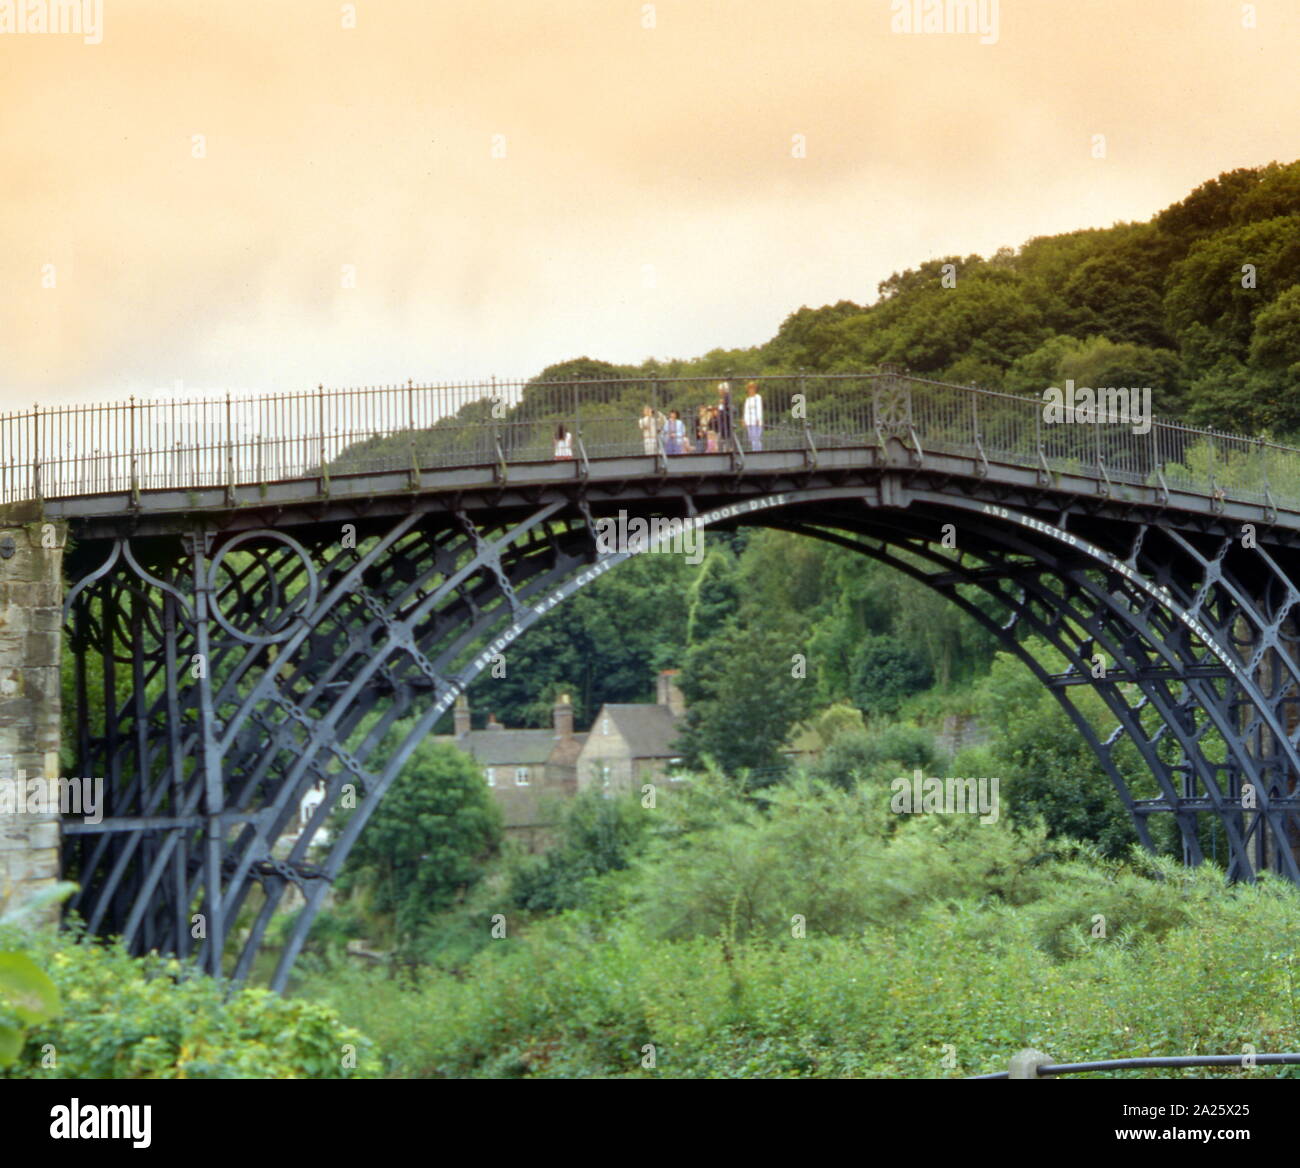 El puente de hierro sobre el río Severn en Shropshire, Inglaterra. Inaugurado en 1781, fue el primer puente importante en el mundo para estar hecha de hierro fundido Foto de stock